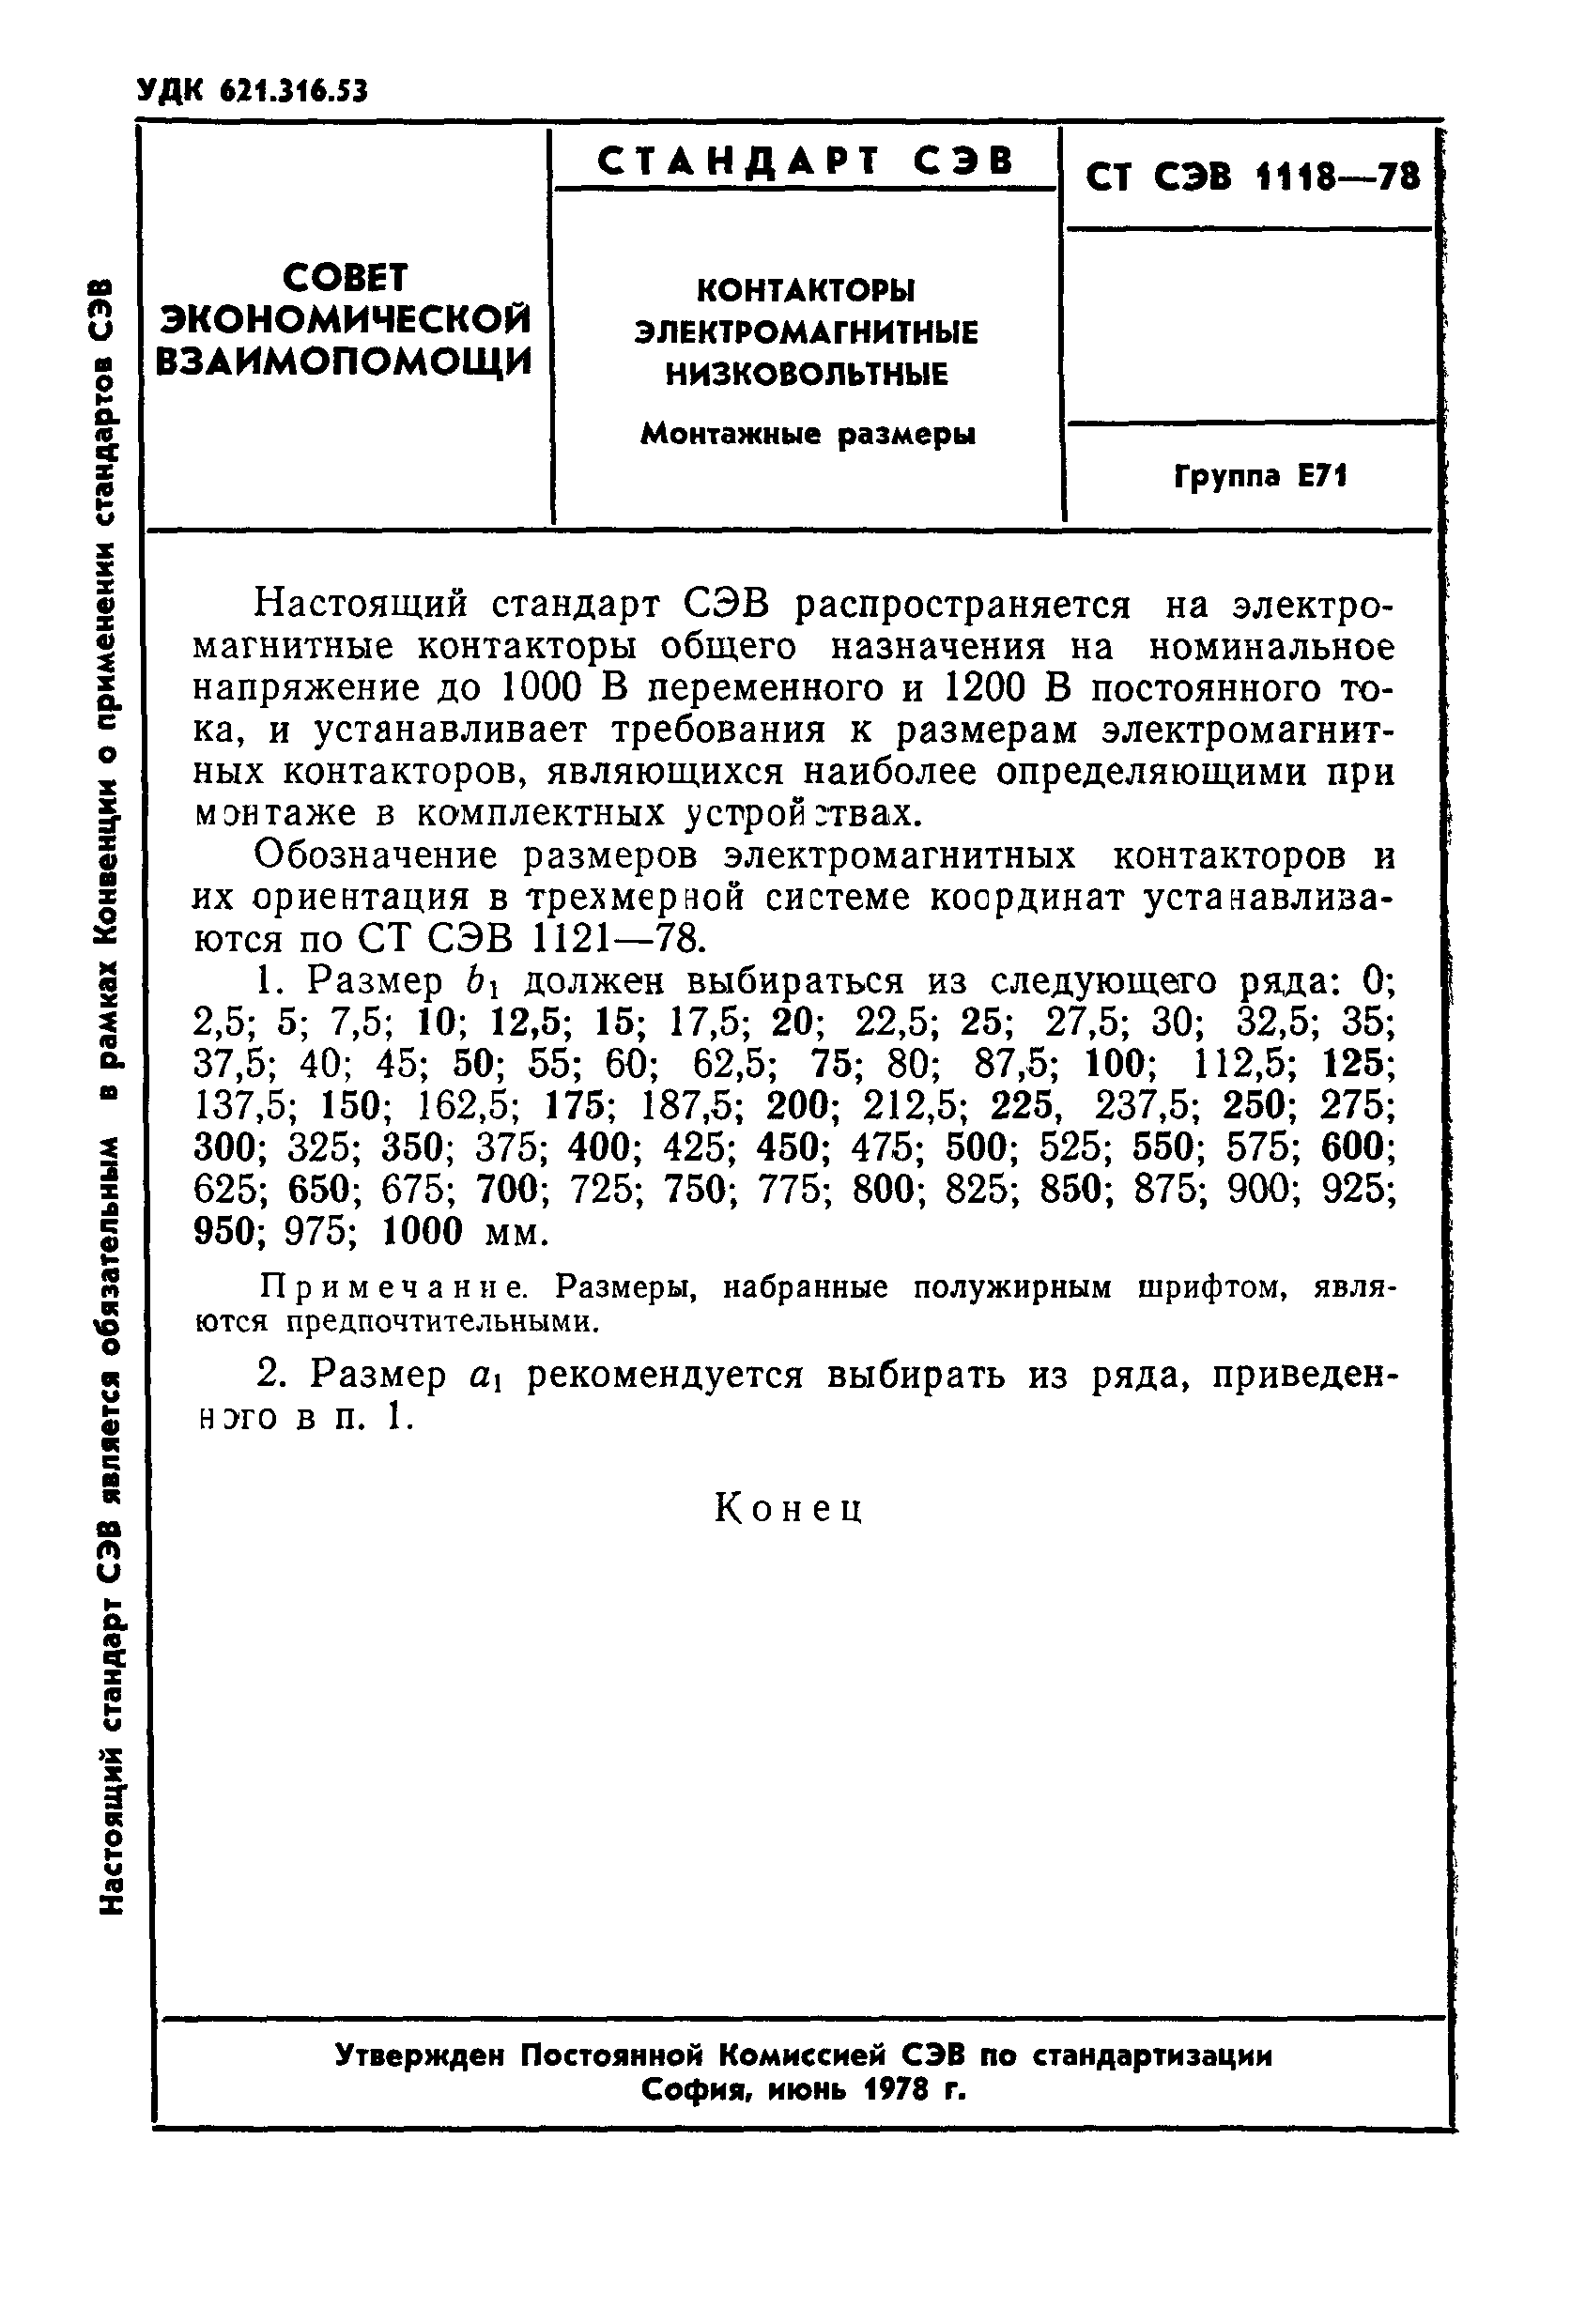 СТ СЭВ 1118-78